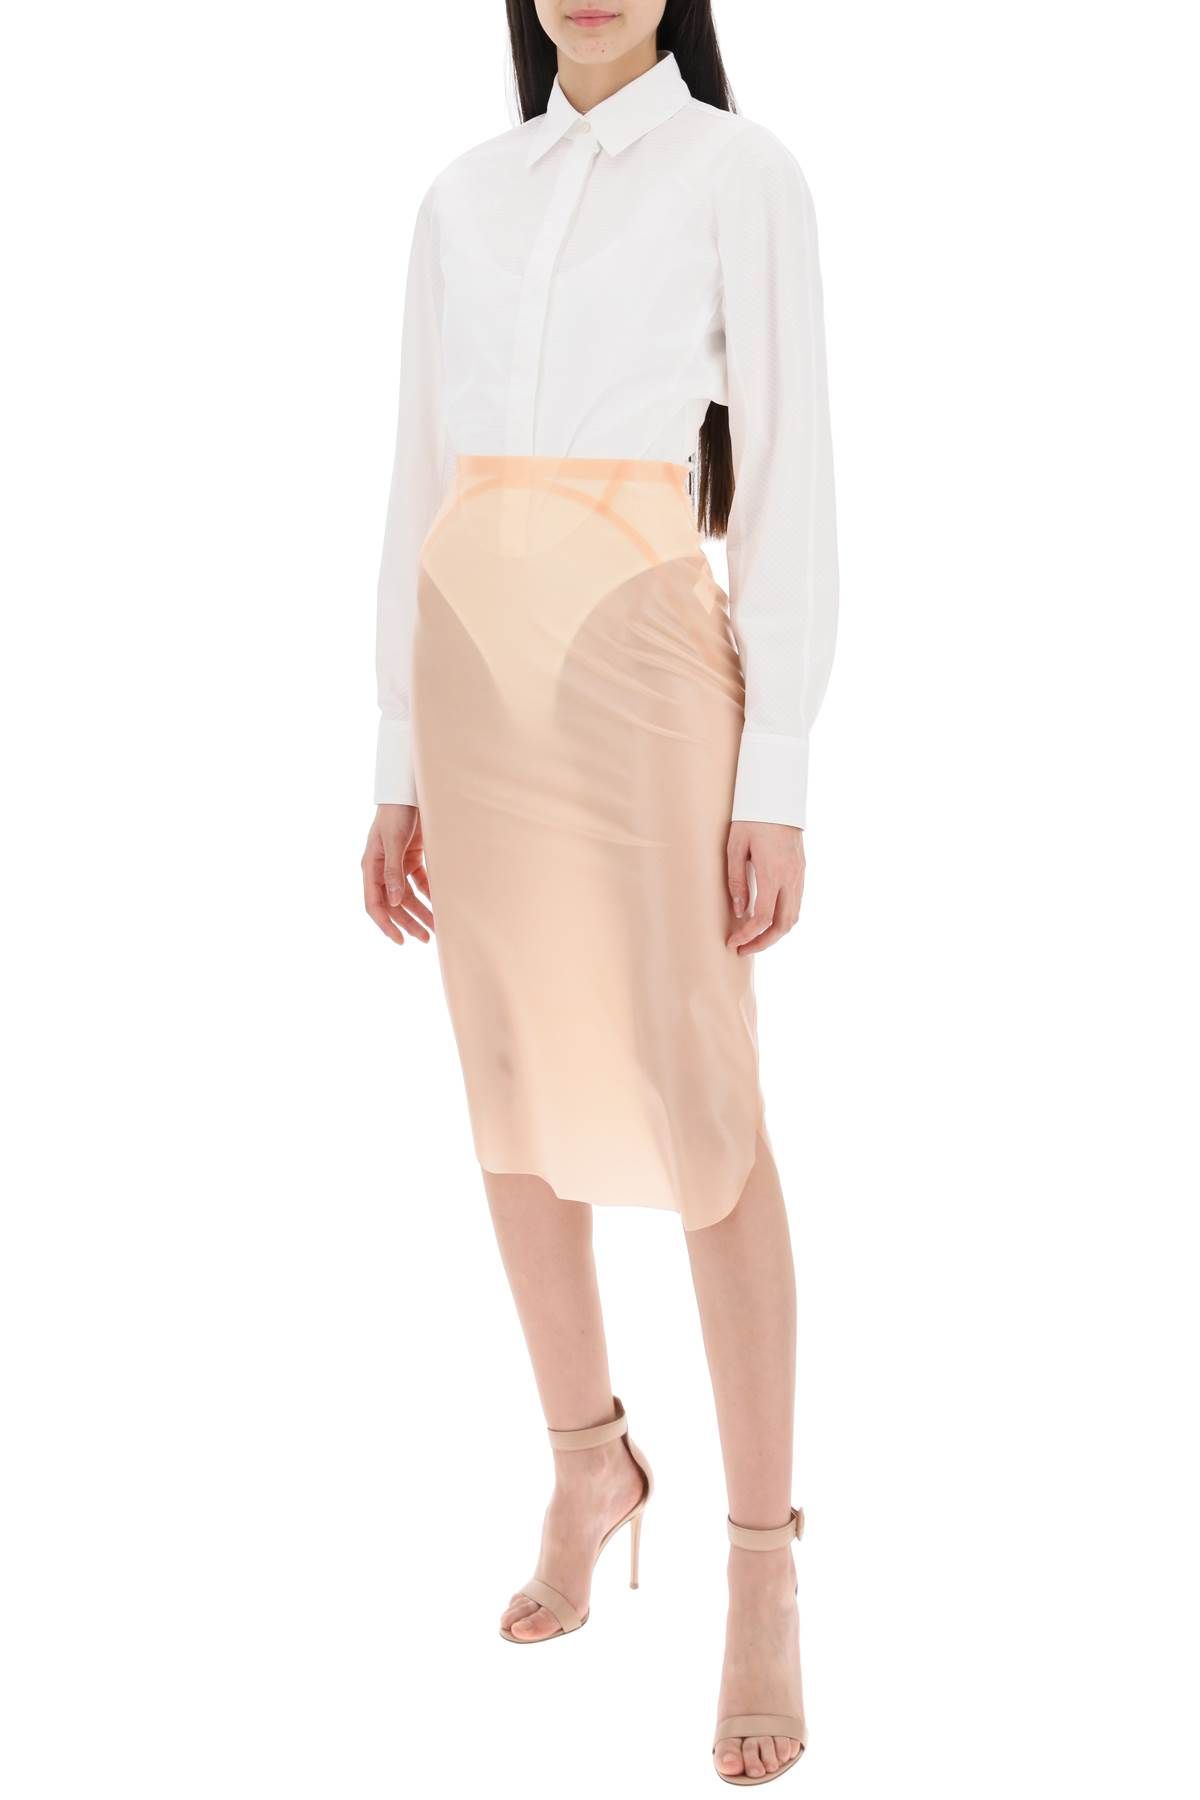 Shop Alaïa Mermaid-style Latex Skirt In Pink